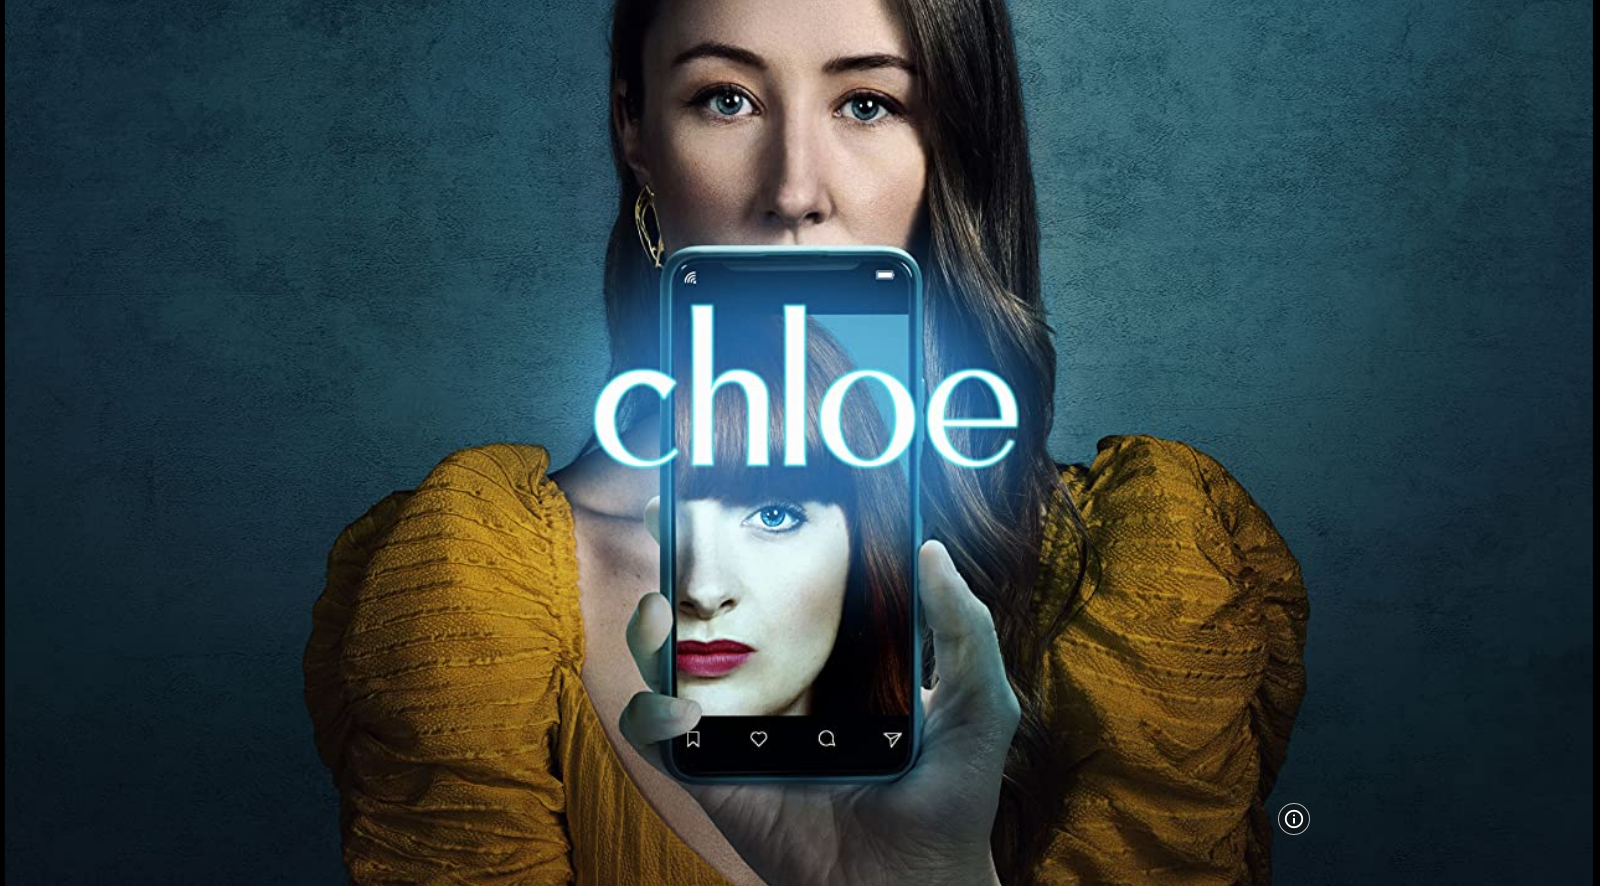 Chloe S01E03 HLG 2160p WEB H265